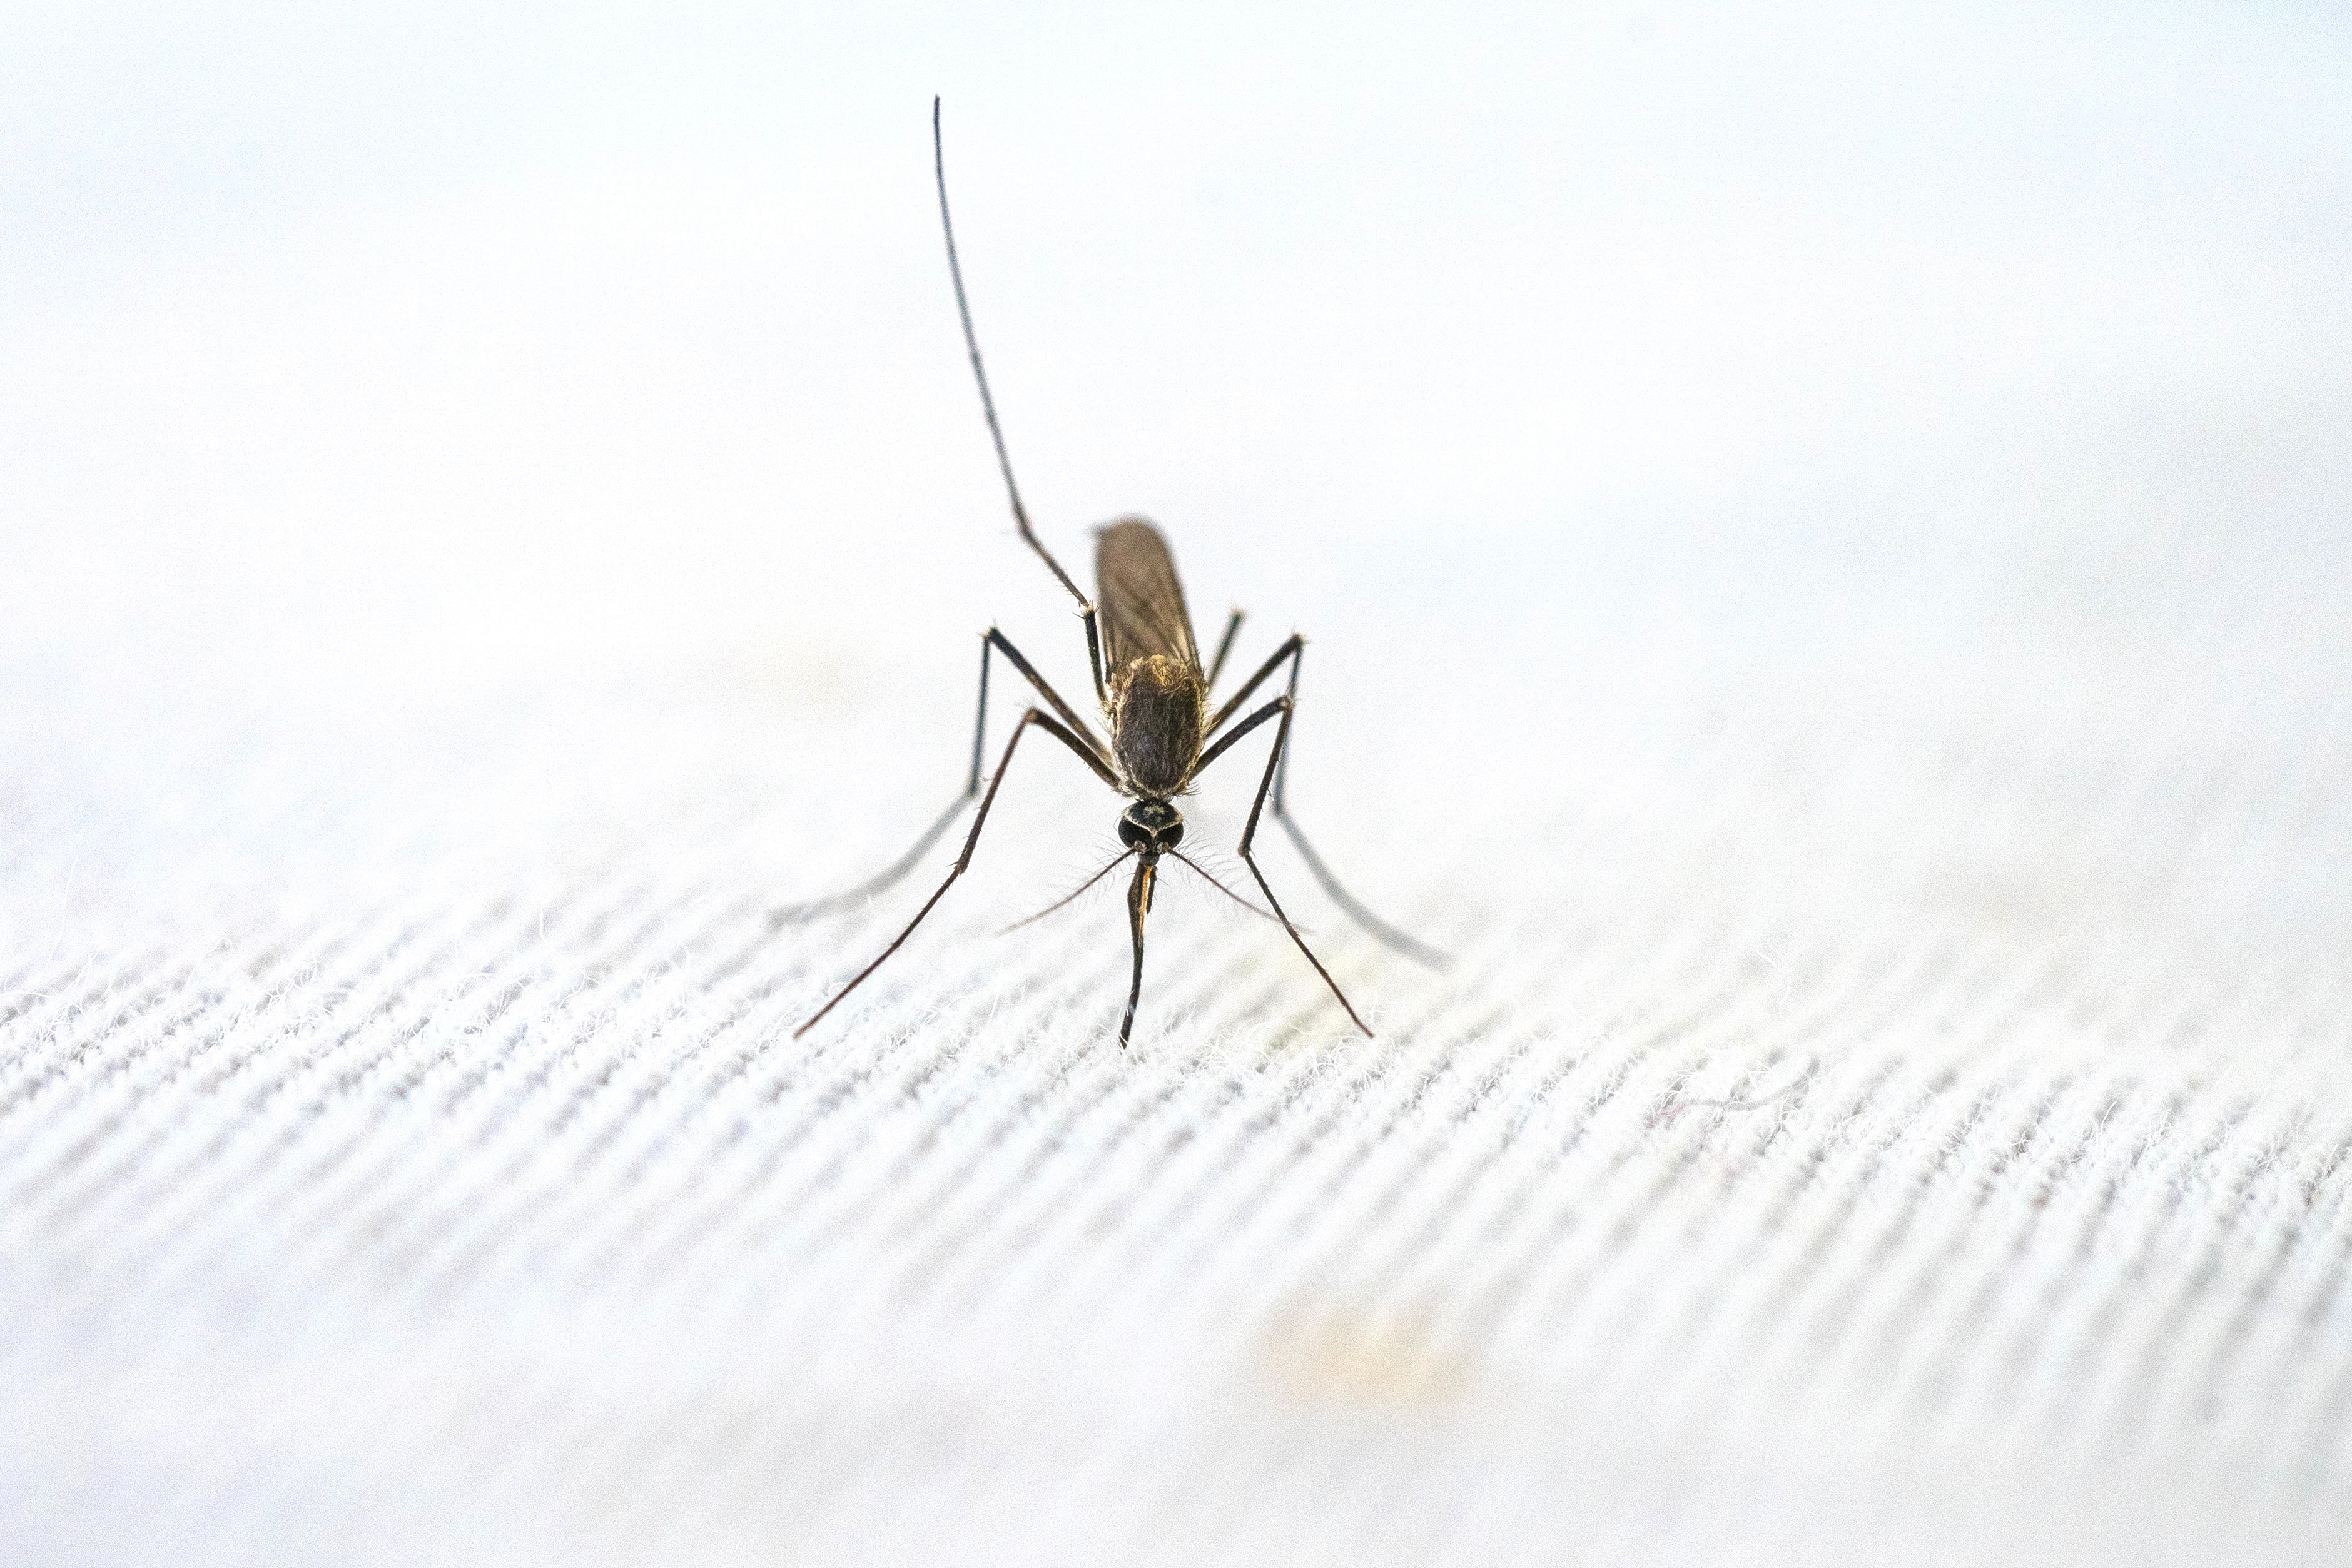 PEXELS | La malaria es causada por un parásito que se transmite a los humanos a través de la picadura de mosquitos anofeles infectados.